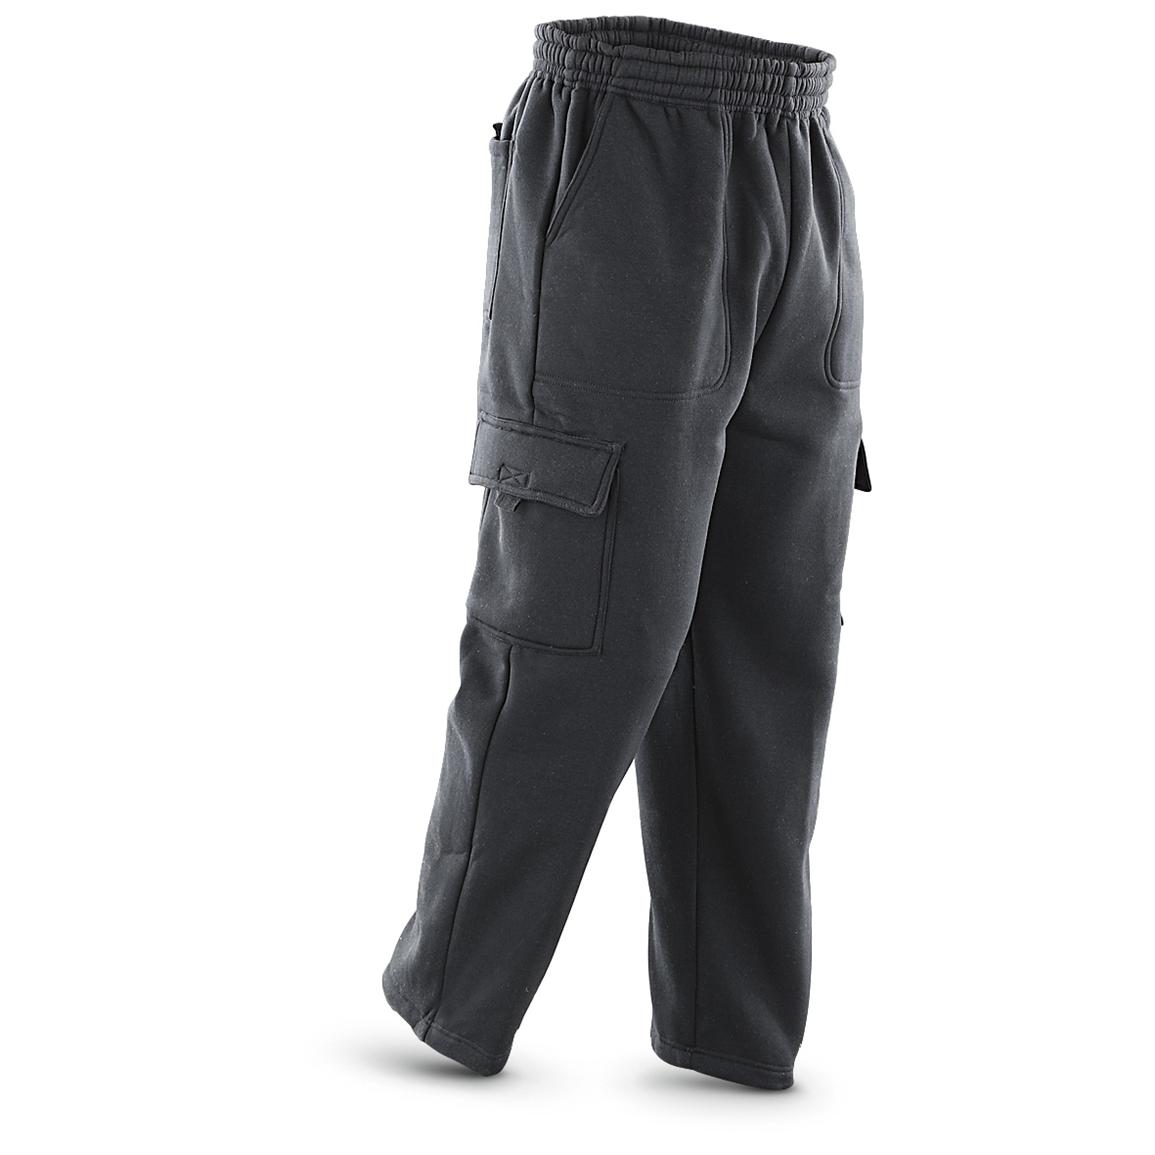 Maxxsel Fleece Cargo Pants - 303907, Jeans & Pants at Sportsman's Guide